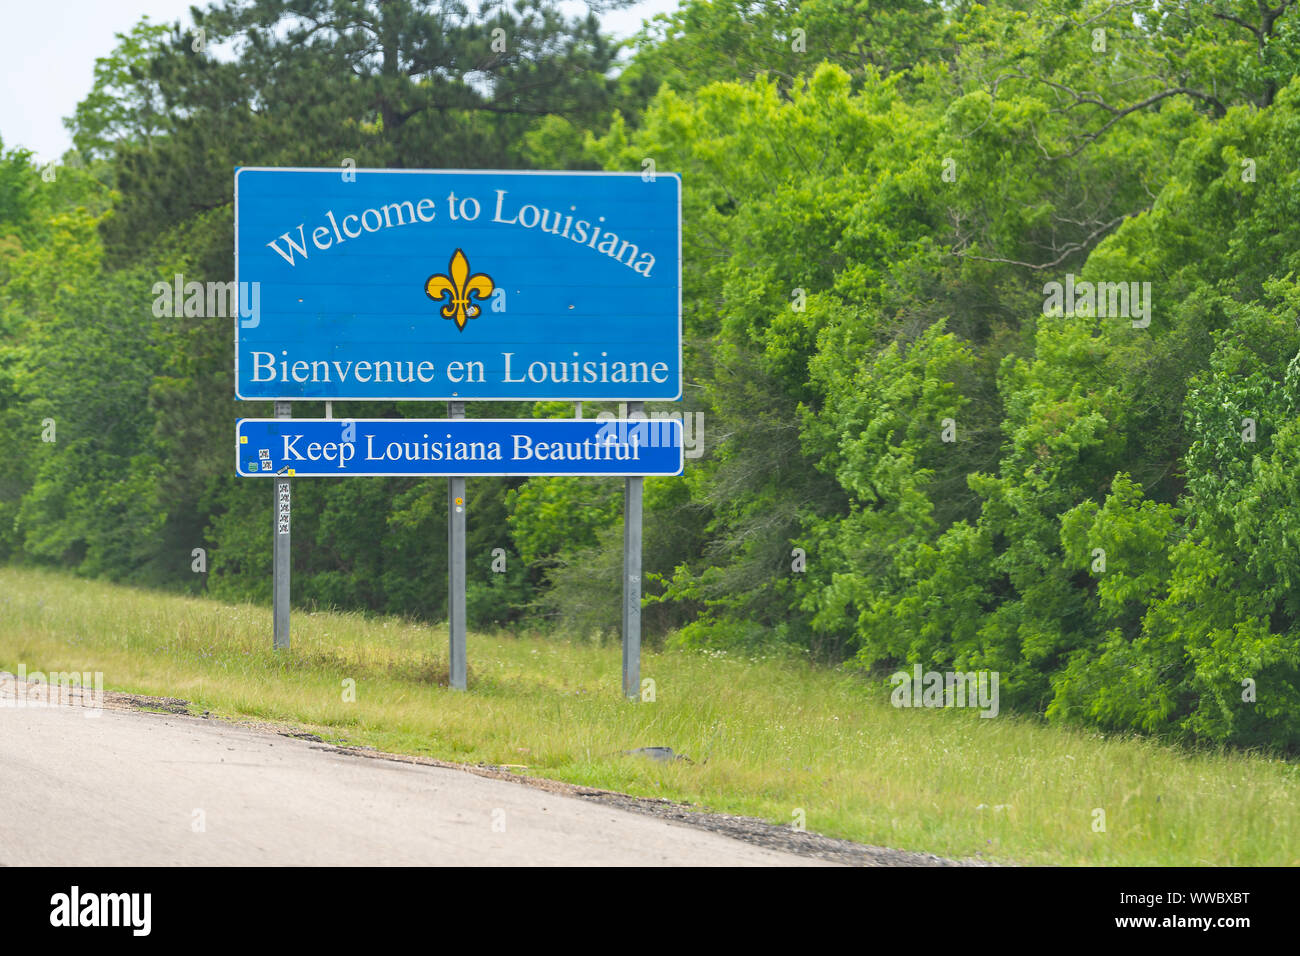 Slidell, États-Unis - 22 Avril 2018 : Route Autoroute avec Bienvenue en Louisiane et signe un texte sur l'interstate i10 Banque D'Images